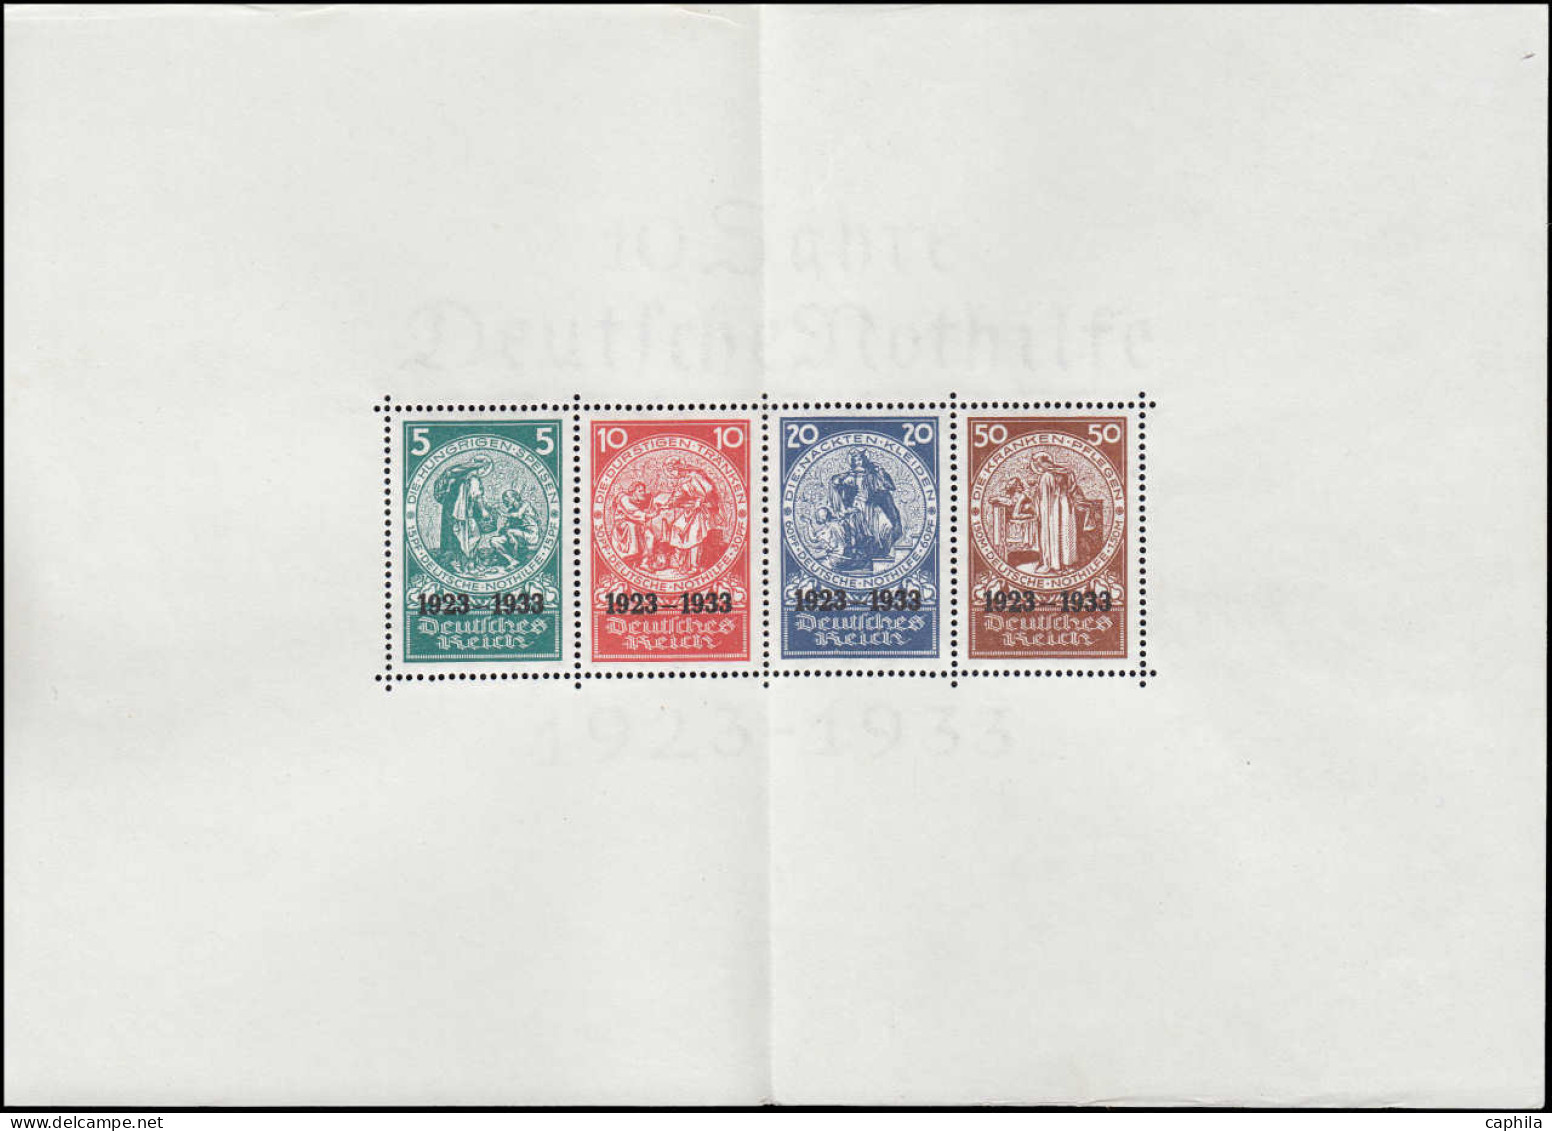 * ALL. EMPIRE - Poste - Rare carnet officiel des postes pour le congrès UPU du Caire de 1934, contenant les timbres d'ép